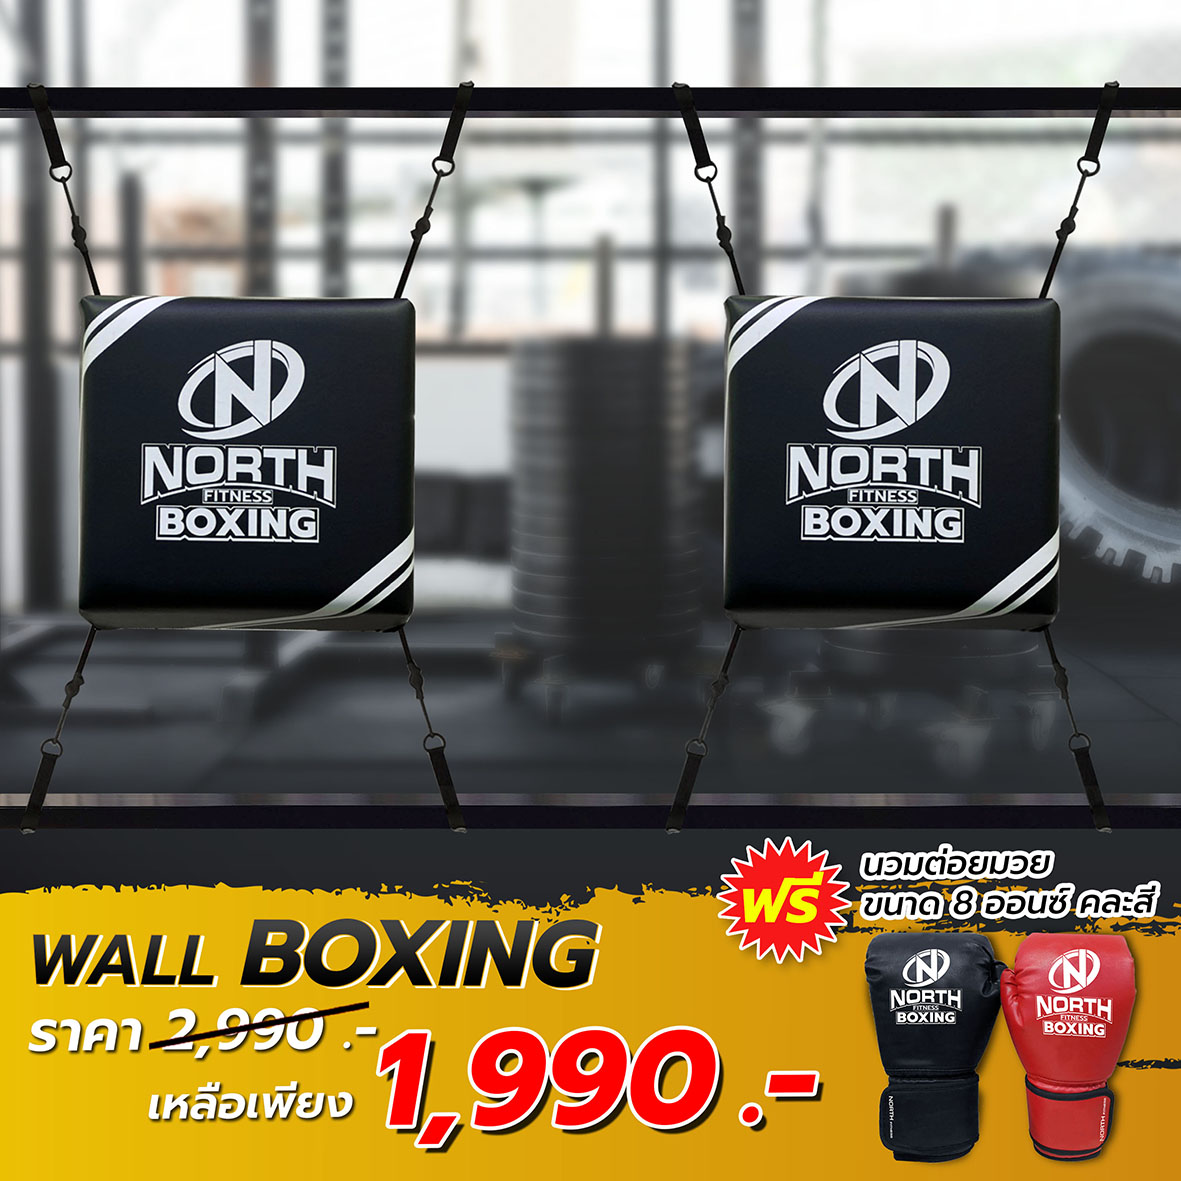 [สั่งวันนี้ พรุ่งนี้ส่ง][สินค้าพร้อมส่ง] North Fitness Wall Boxing เป้าต่อยมวย แบบยึดติดขอบประตู ออกกำลังกาย ซ้อมต่อย